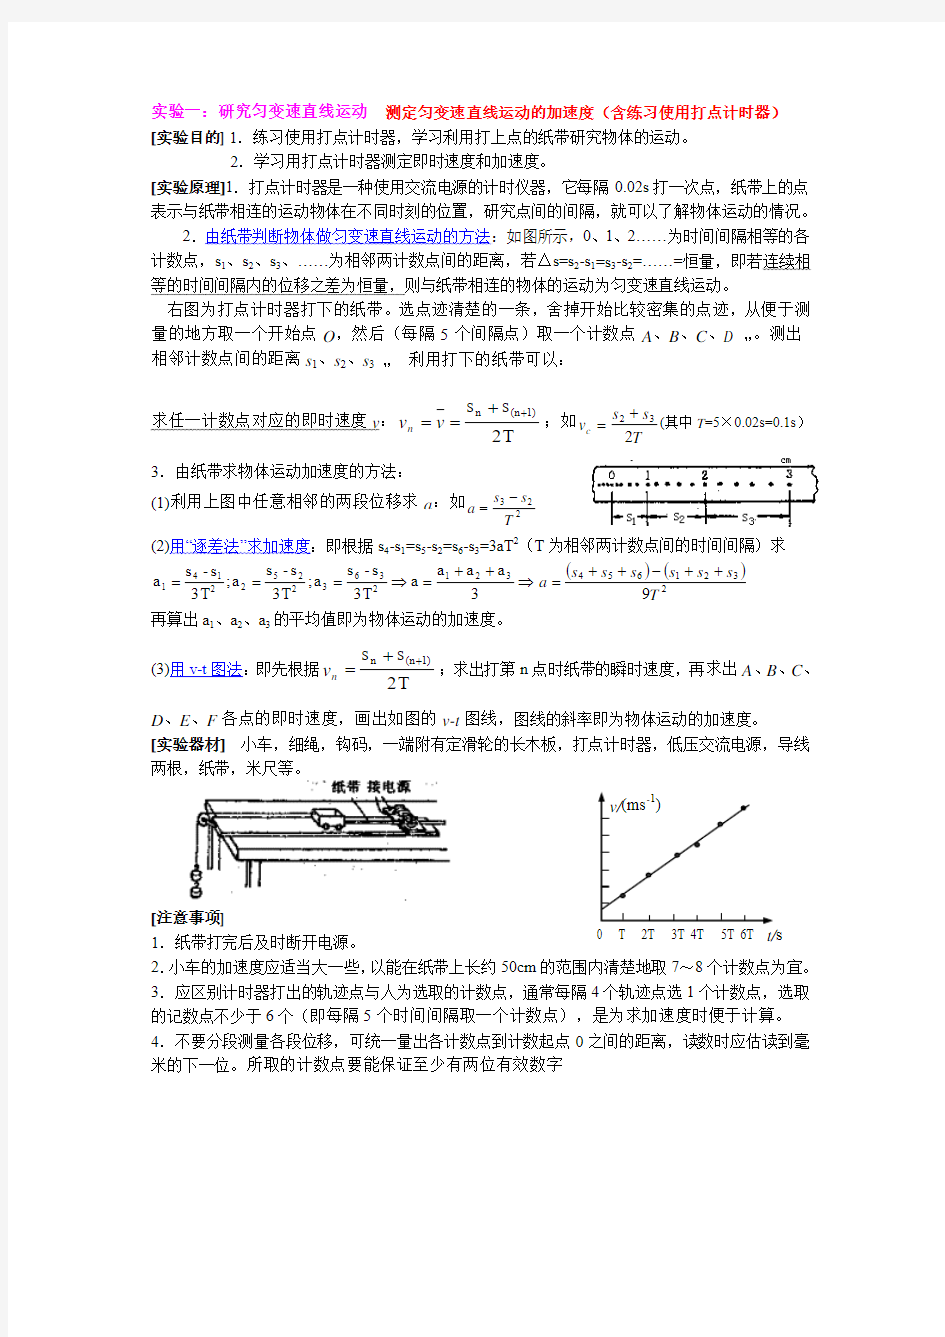 广东省高考考纲要求的物理实验(整理)